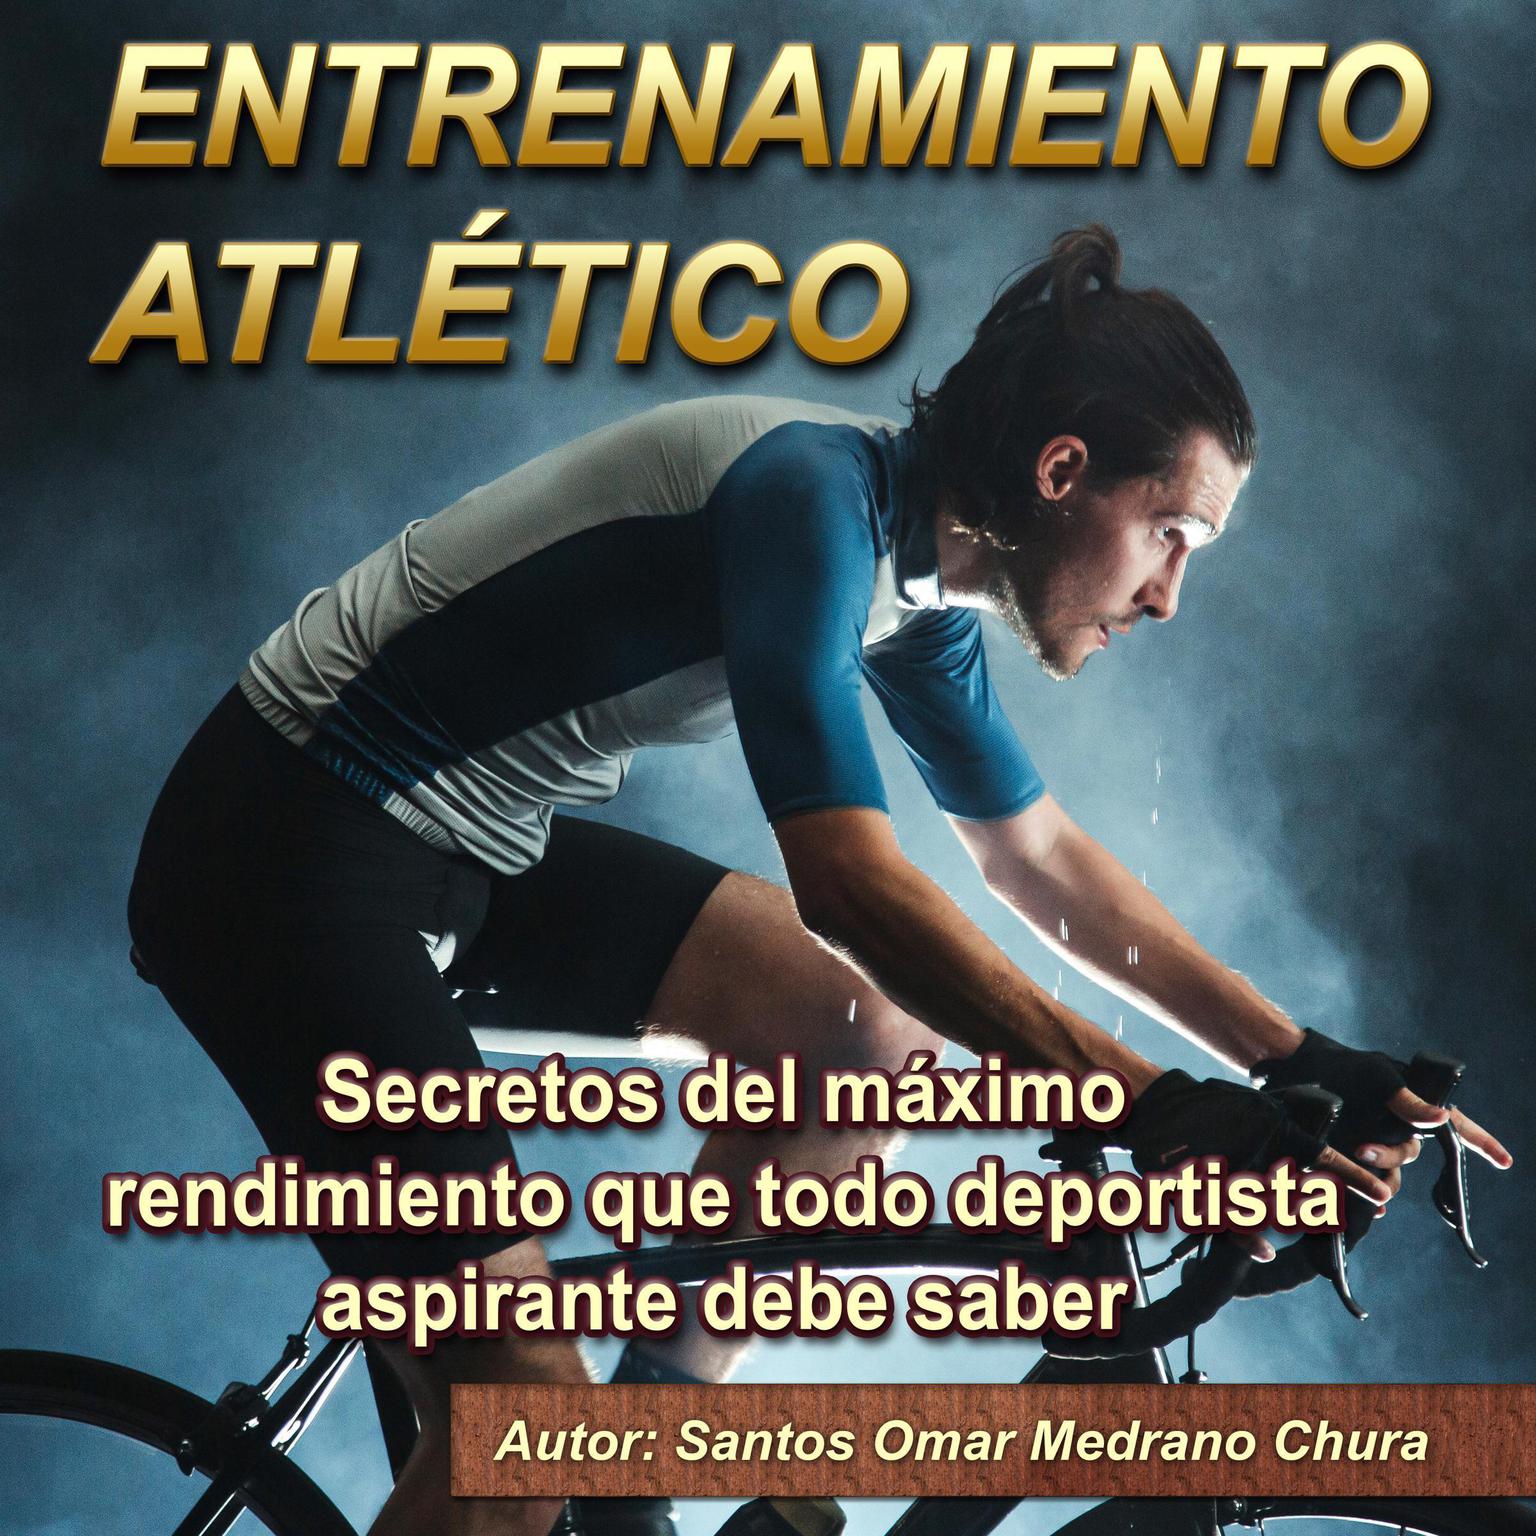 Entrenamiento atlético: Secretos del máximo rendimiento que todo deportista aspirante debe saber Audiobook, by Santos Omar Medrano Chura